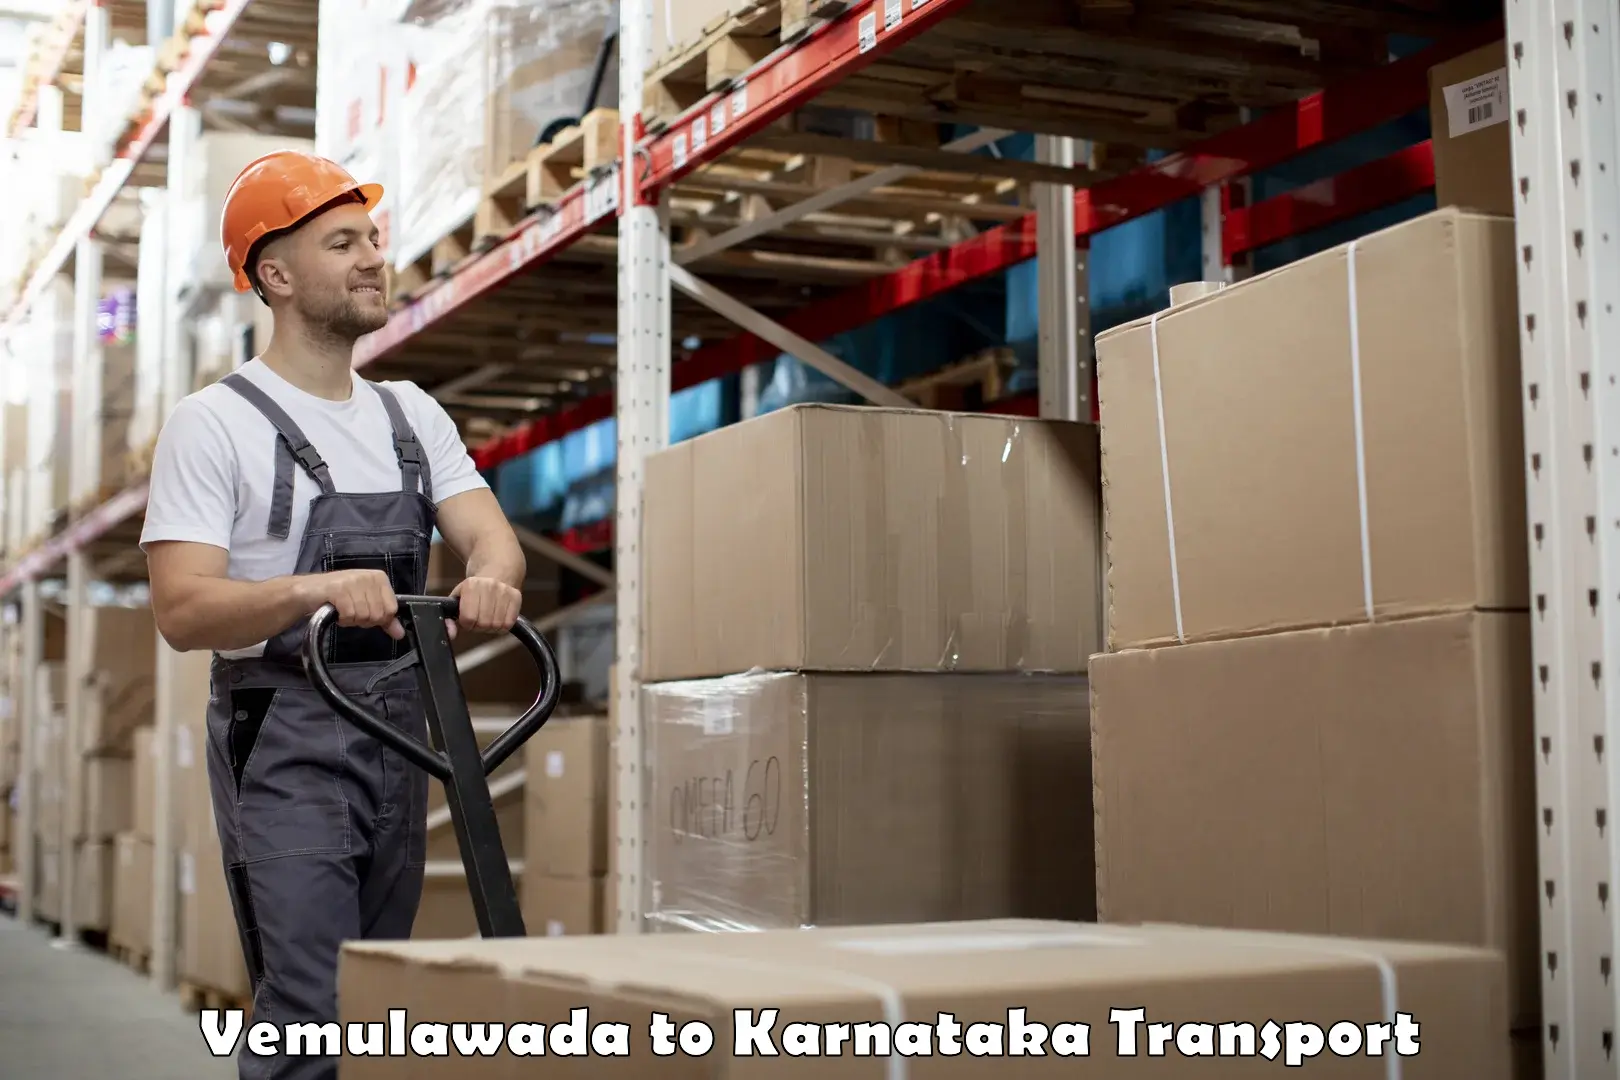 Furniture transport service Vemulawada to NITTE Mangaluru